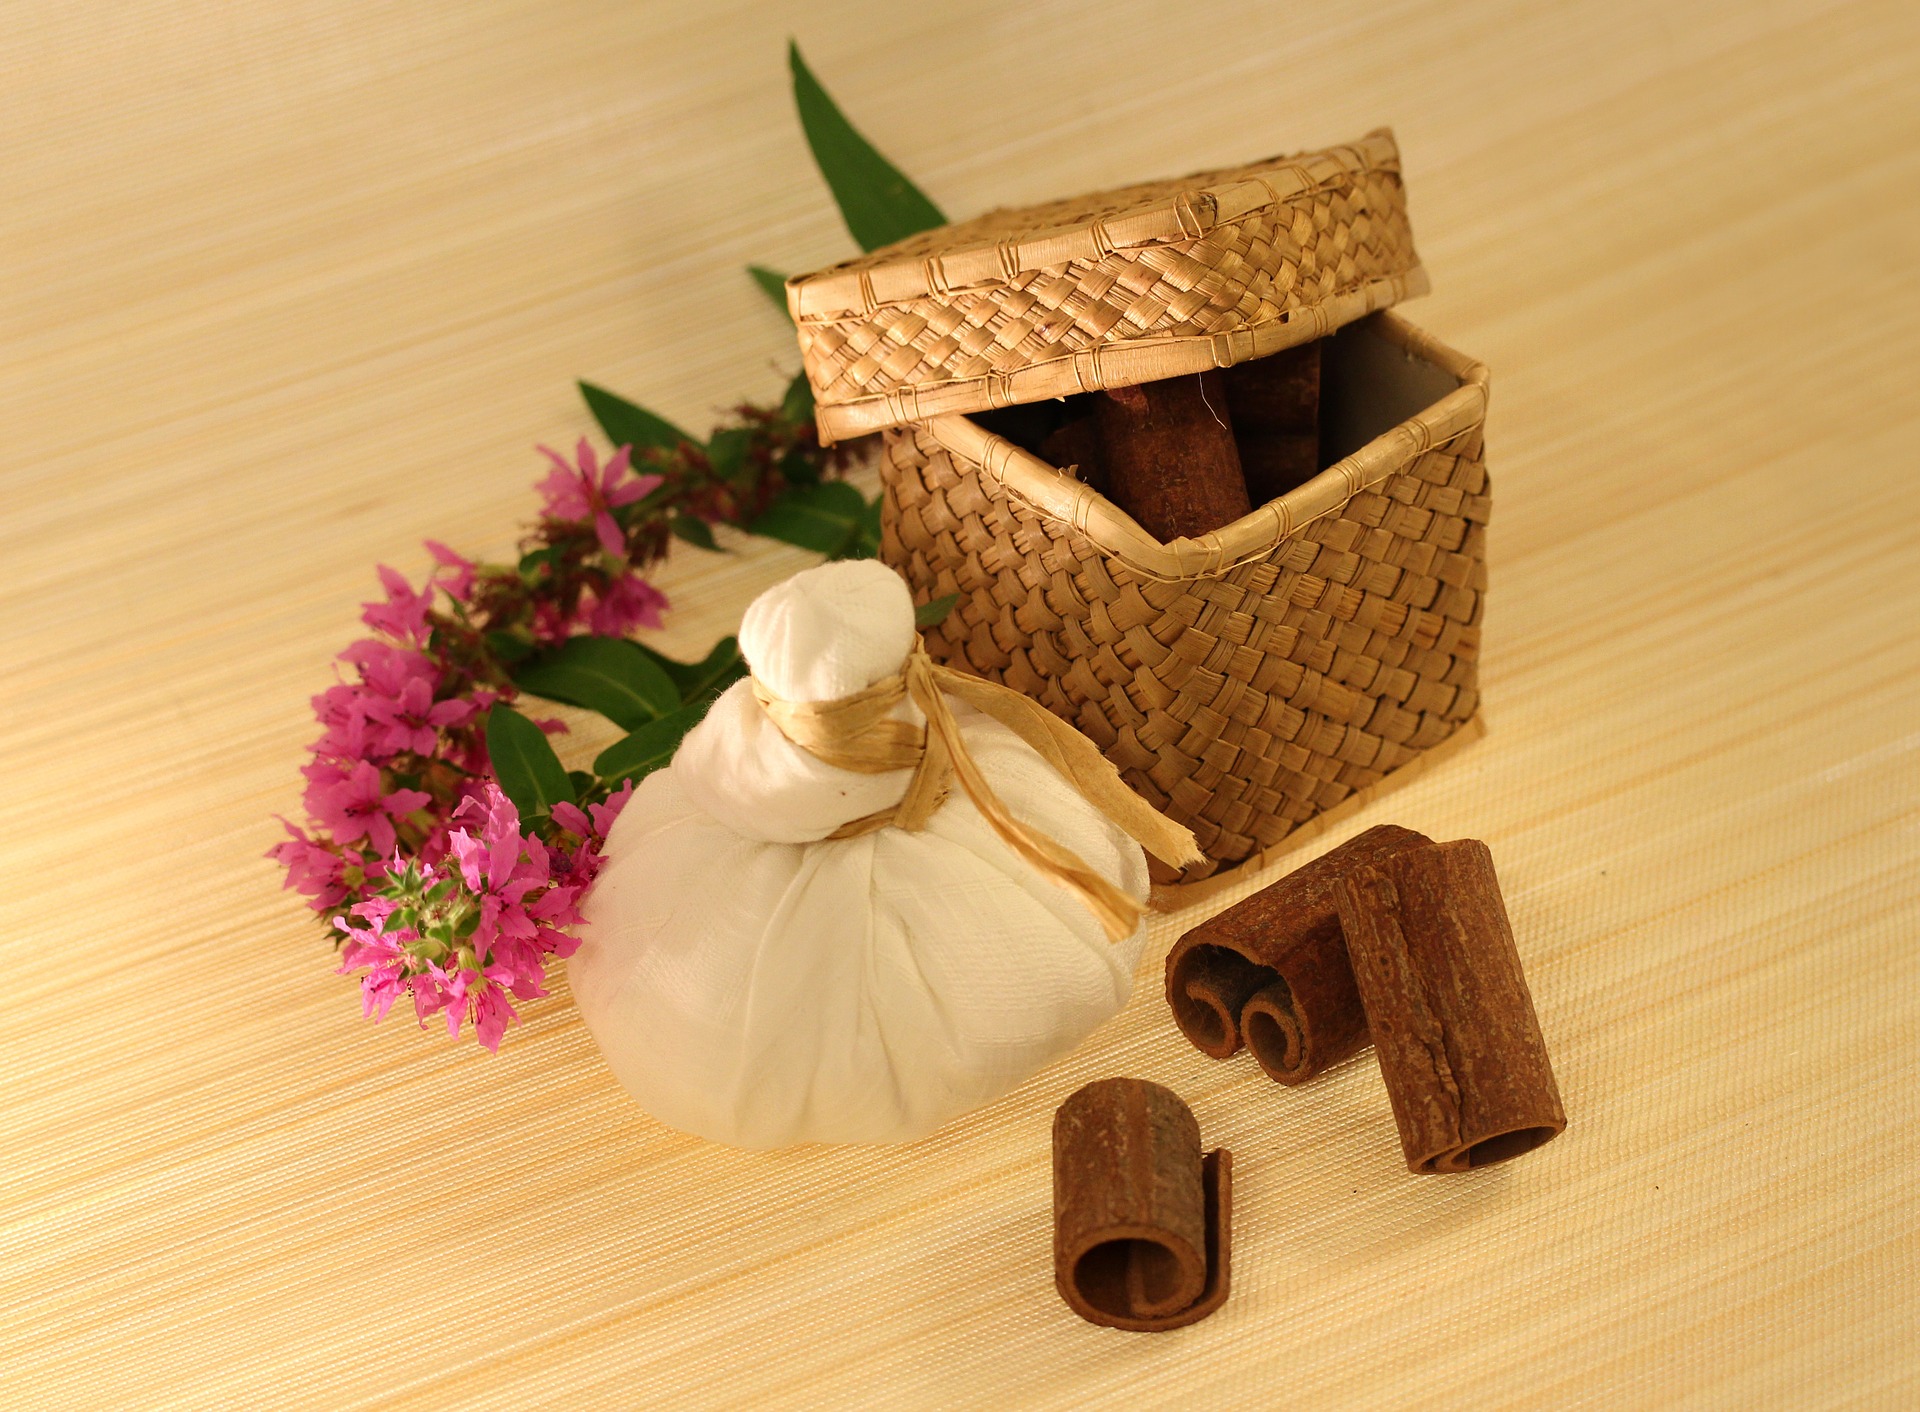 Gewürze in einem Bastkorb, ein ayurvedischer Kräuterstempel und Blüten